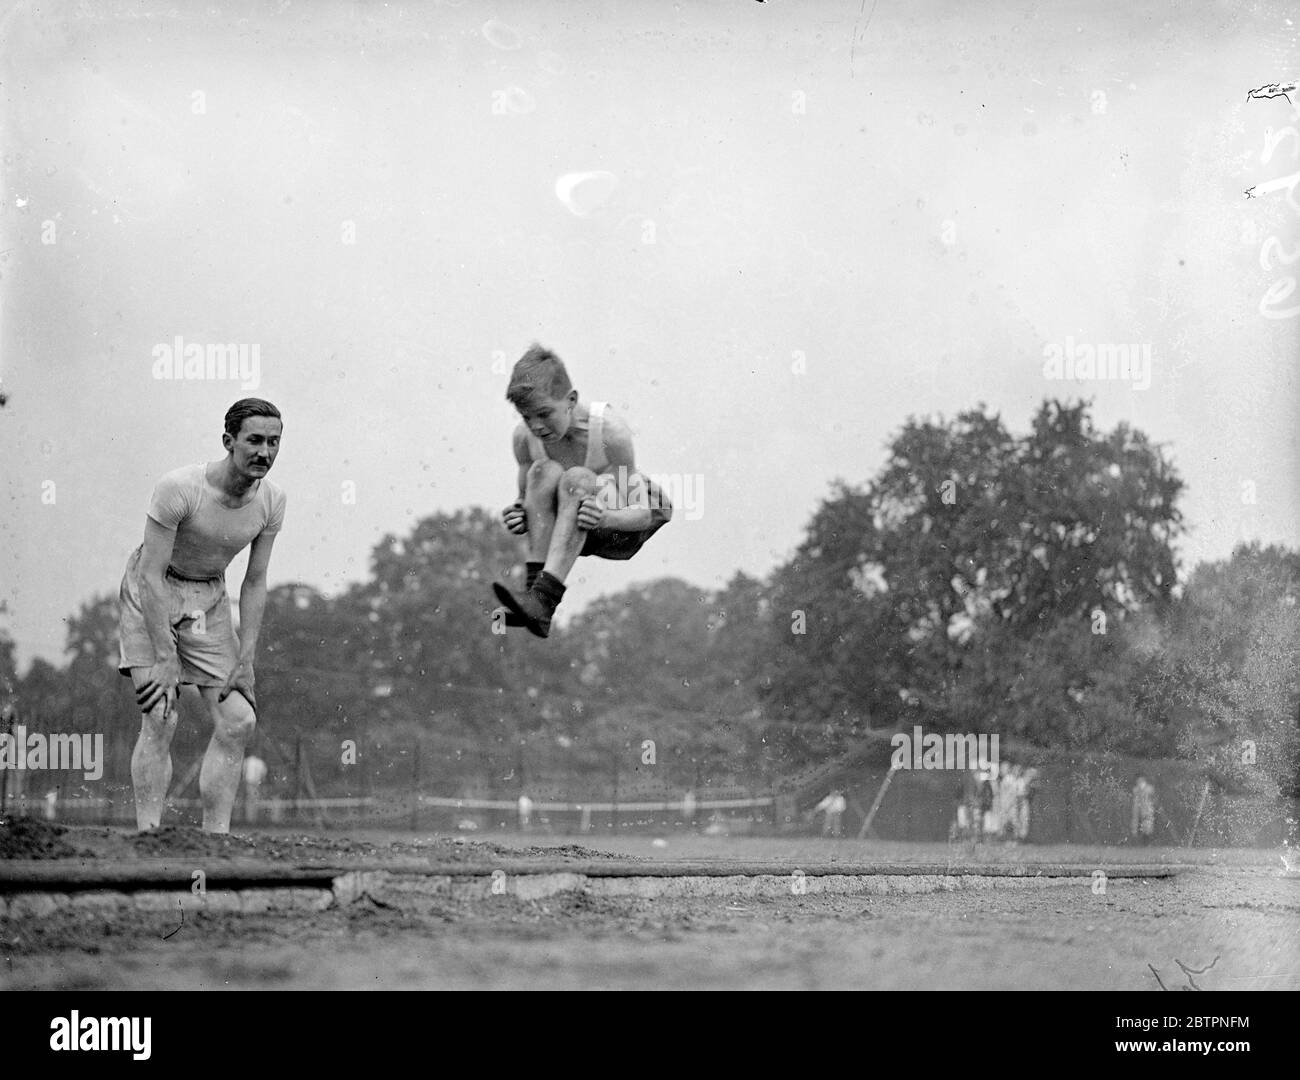 Una lezione del papà Frederik Robert Miller, ex rugby gallese internazionale, ora maestro sportivo alla St Johns School di Brixton, che mostra al figlio come fare un salto a lungo a Battersea Park, Londra. 19. Giugno 1937 Foto Stock